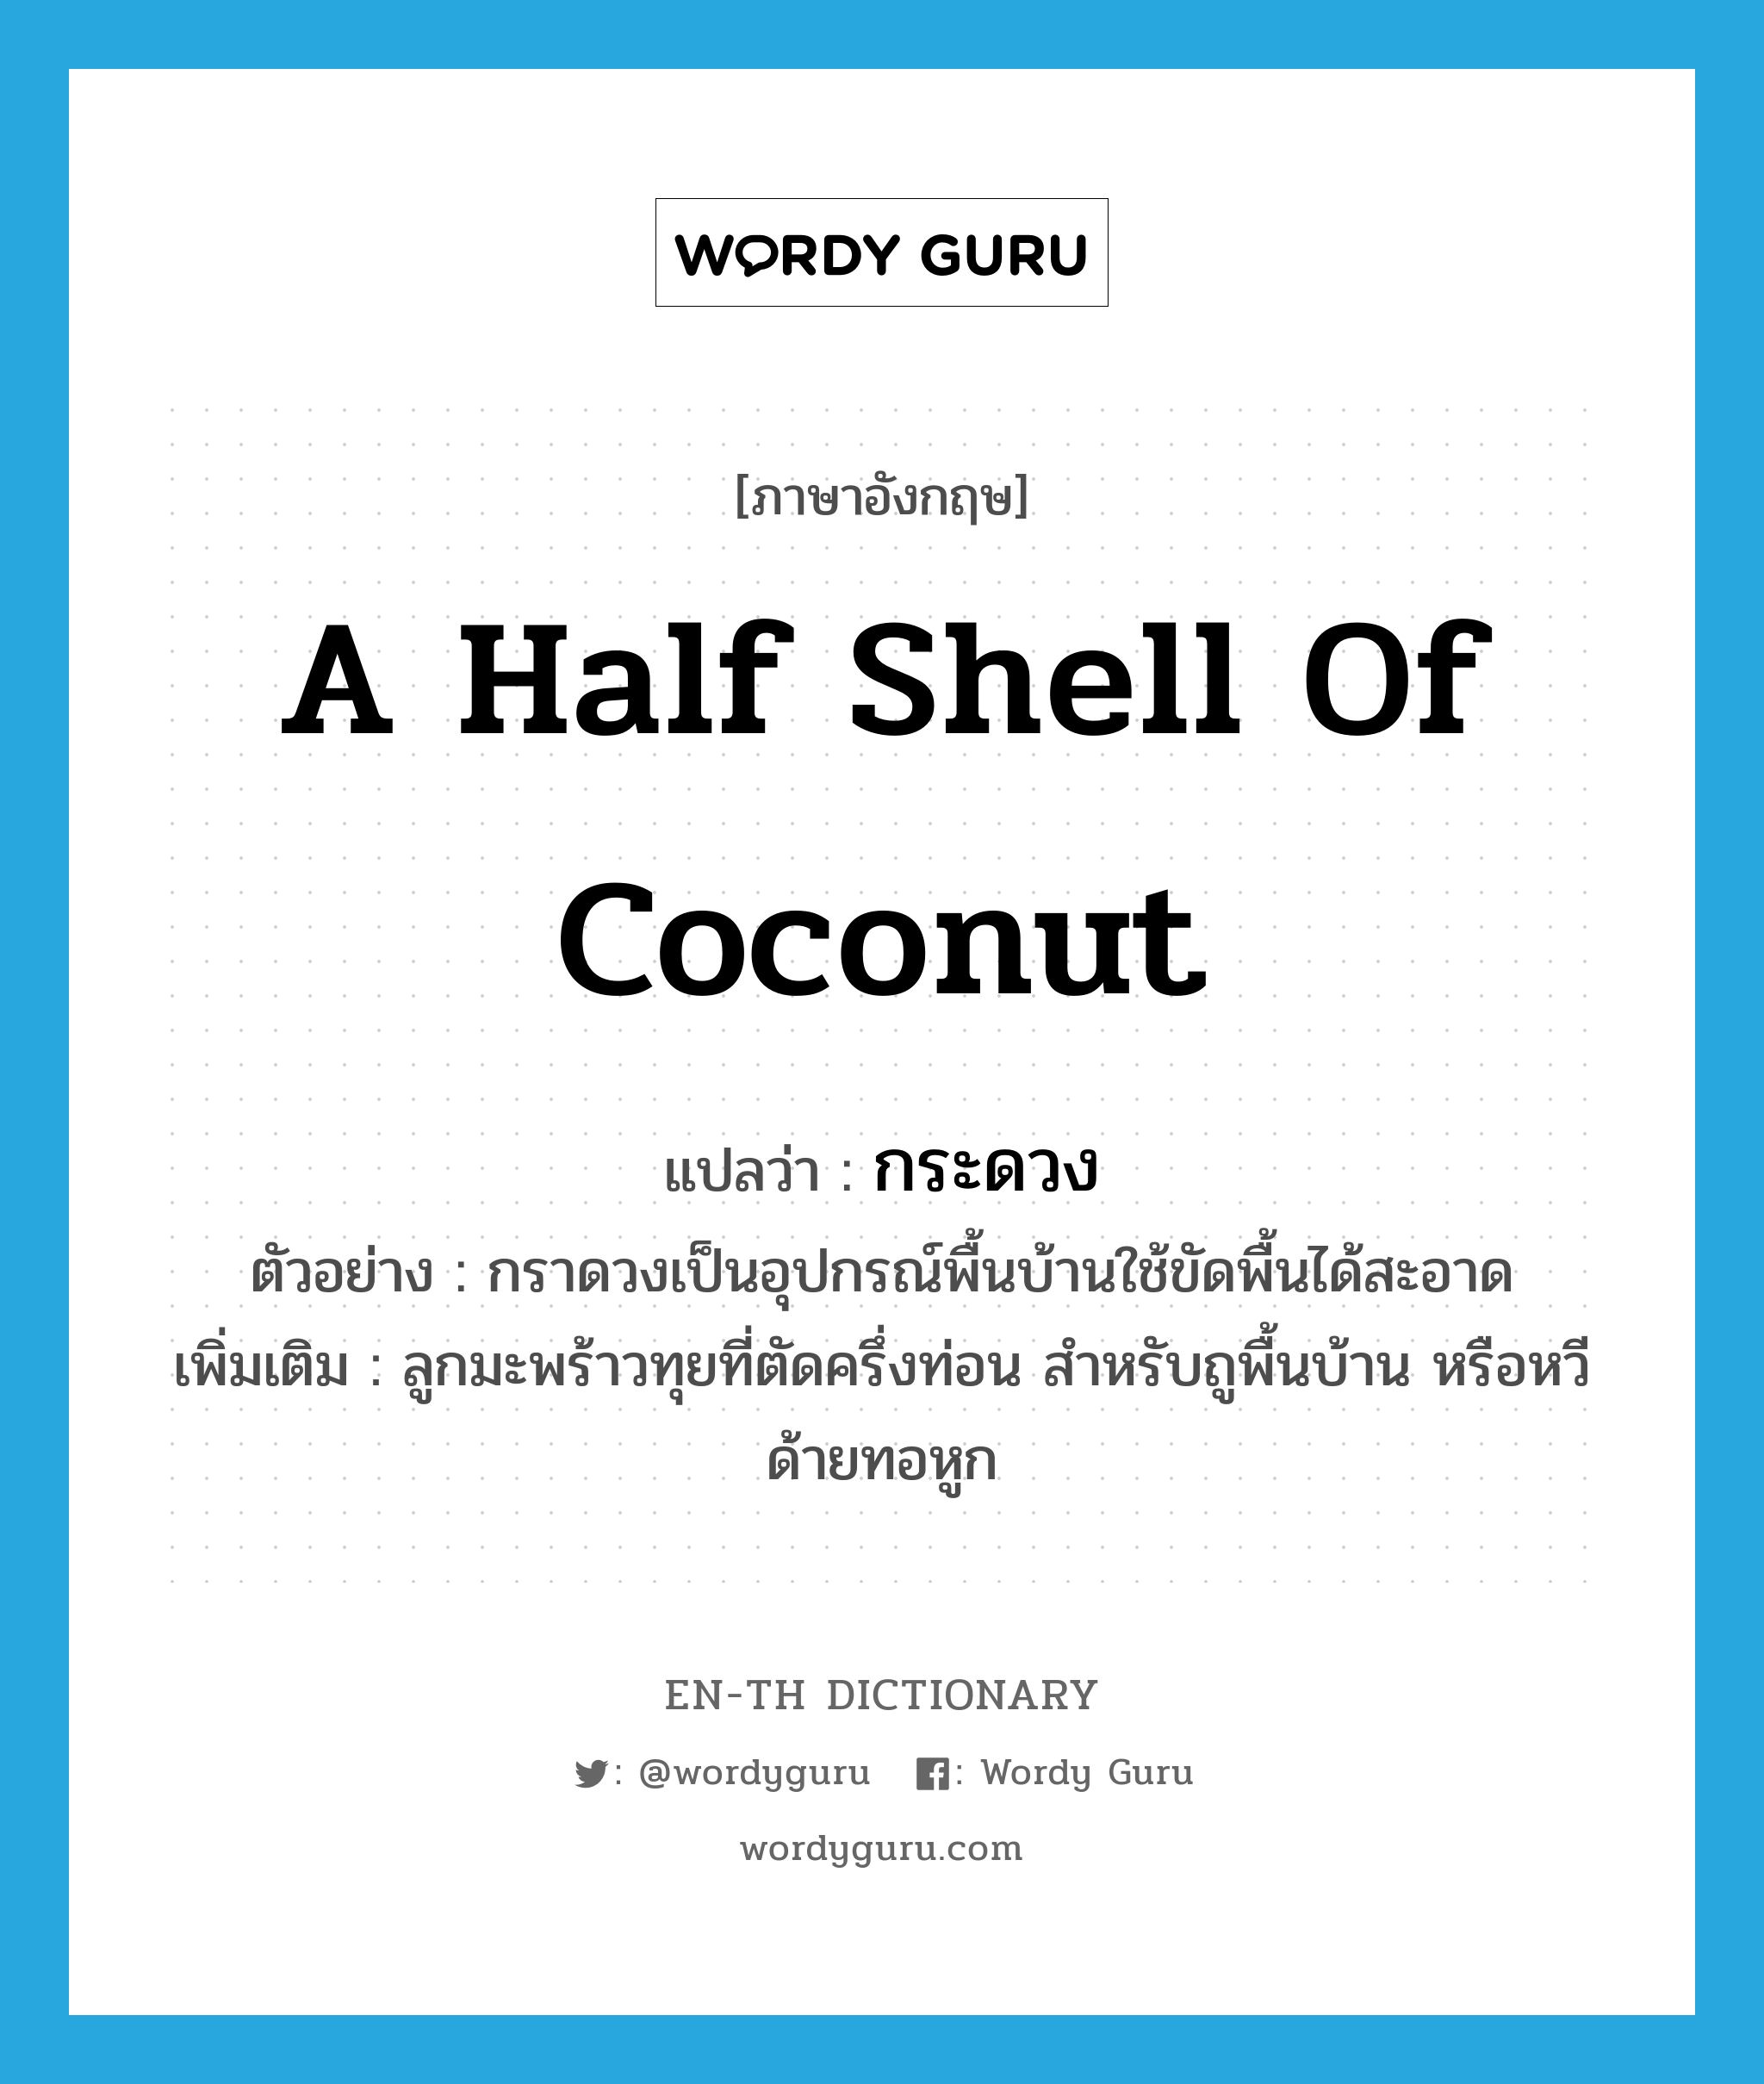 กระดวง ภาษาอังกฤษ?, คำศัพท์ภาษาอังกฤษ กระดวง แปลว่า a half shell of coconut ประเภท N ตัวอย่าง กราดวงเป็นอุปกรณ์พื้นบ้านใช้ขัดพื้นได้สะอาด เพิ่มเติม ลูกมะพร้าวทุยที่ตัดครึ่งท่อน สำหรับถูพื้นบ้าน หรือหวีด้ายทอหูก หมวด N